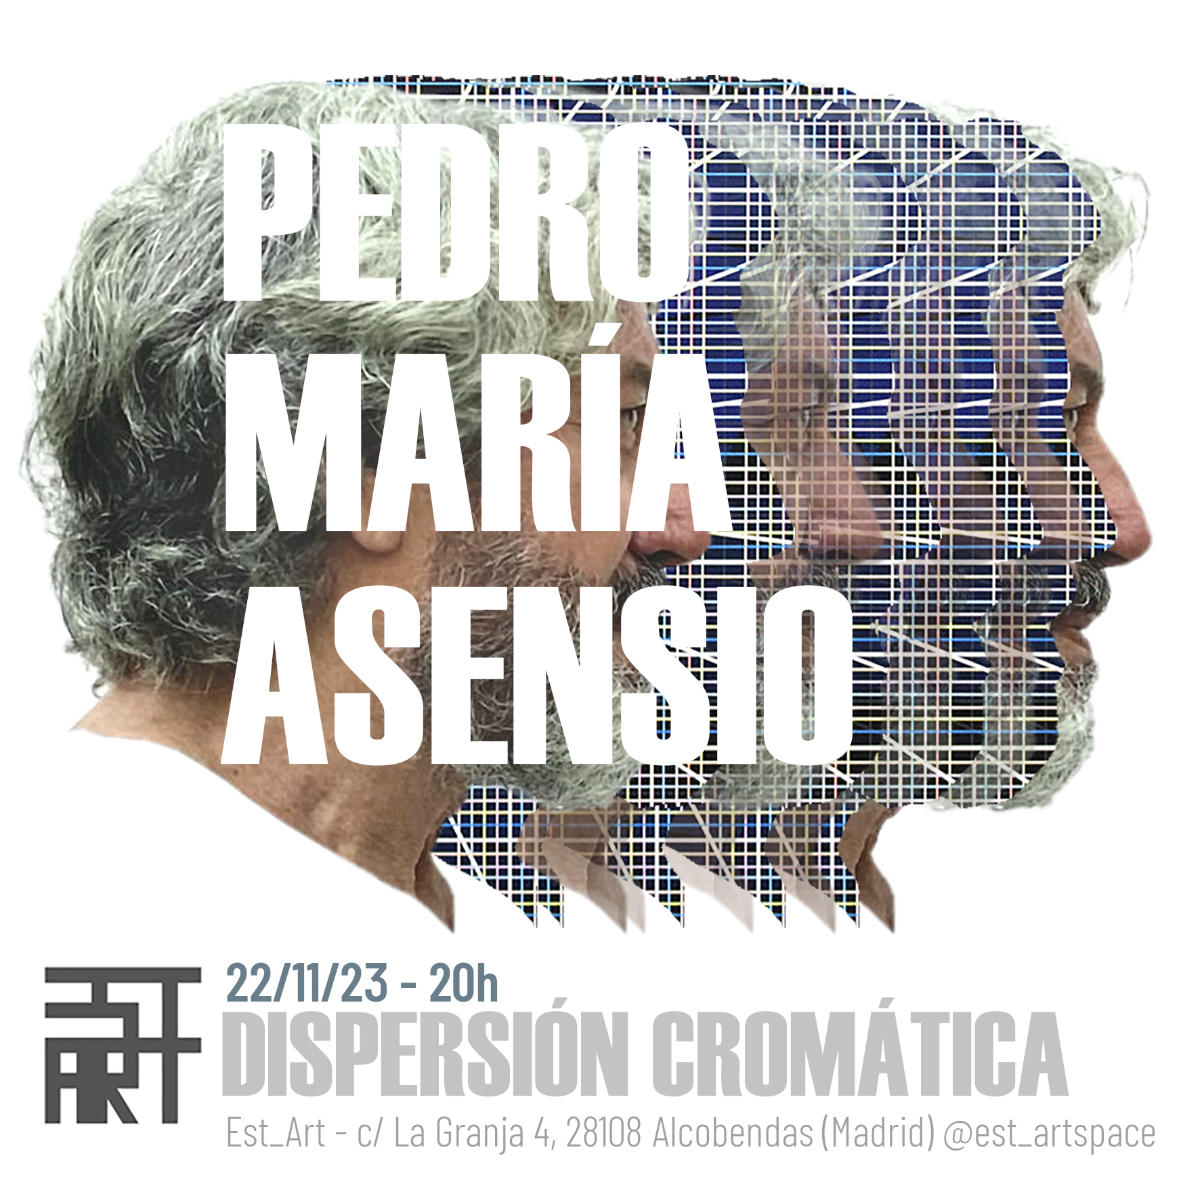 Dispersión Cromática. Una obra de Pedro María Asensio en EST_ART Space, Alcobendas, Madrid